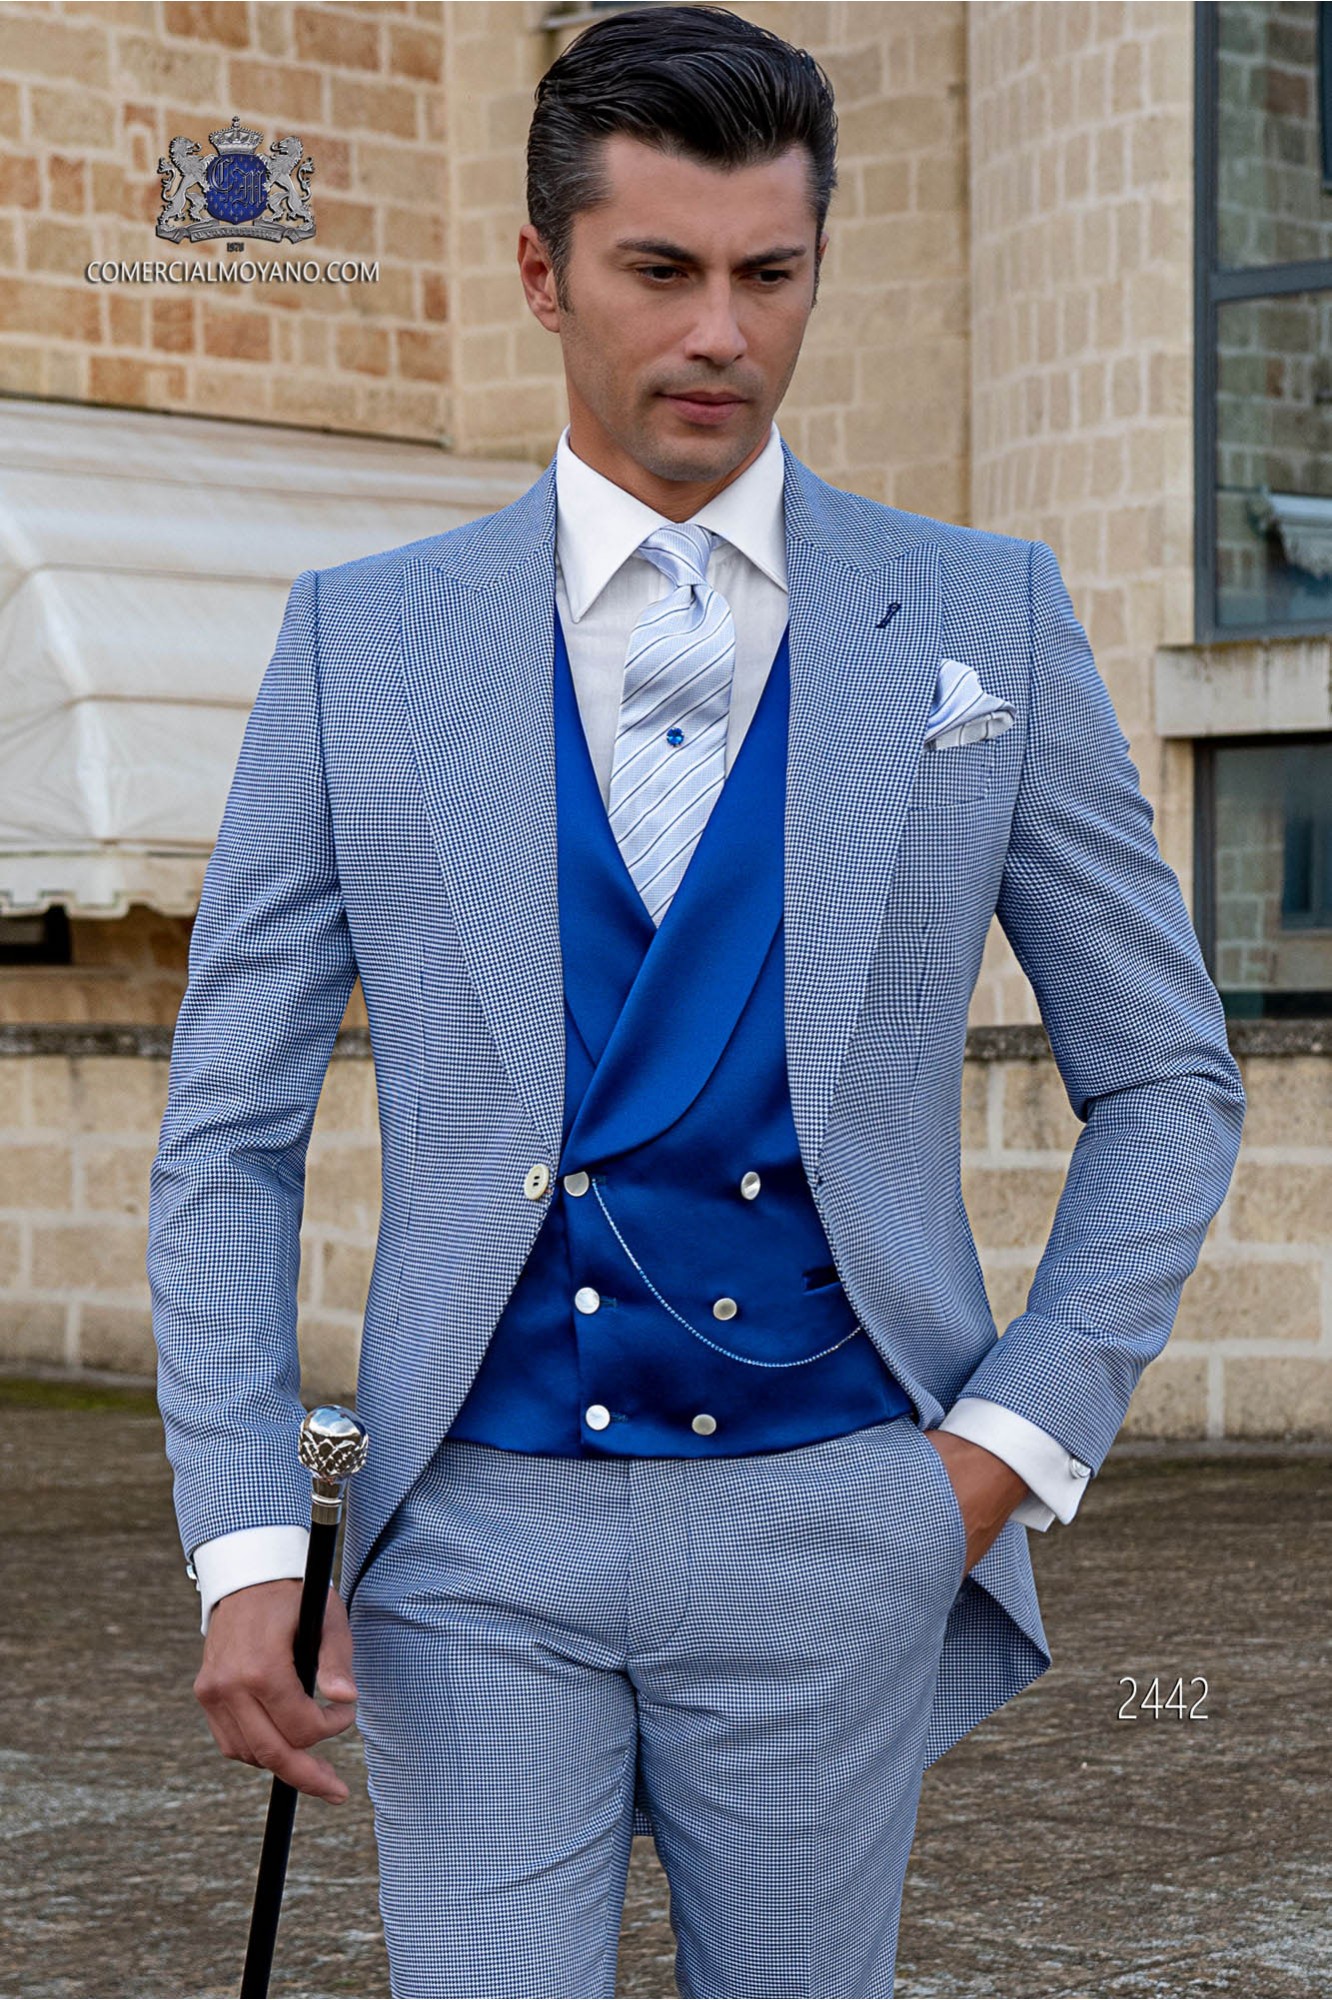 Chaqué de novio pata de gallo azul royal modelo: 2442 Mario Moyano colección Gentleman